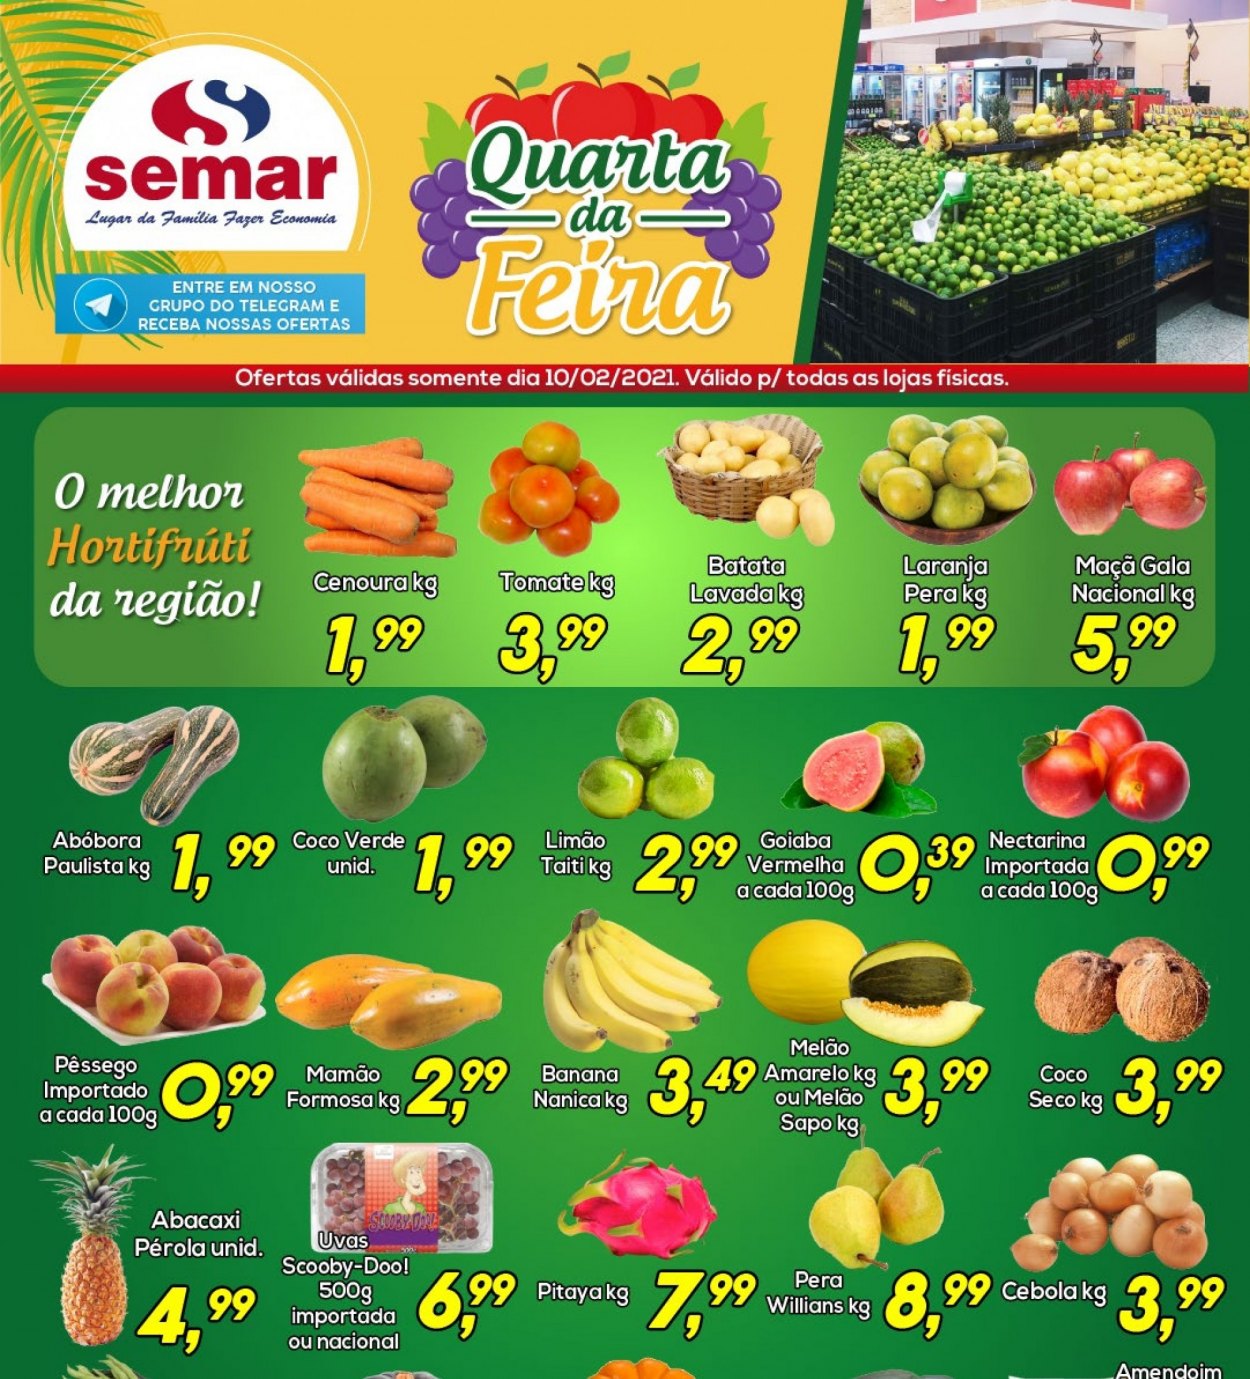 thumbnail - Folheto Semar Supermercados - 10/02/2021 - 10/02/2021 - Produtos em promoção - banana, maçã, pera, abacaxi, laranja, melão, uva, pêssego, limão, mamão, tomate, batata, abóbora, cebola, cenoura, coco. Página 1.